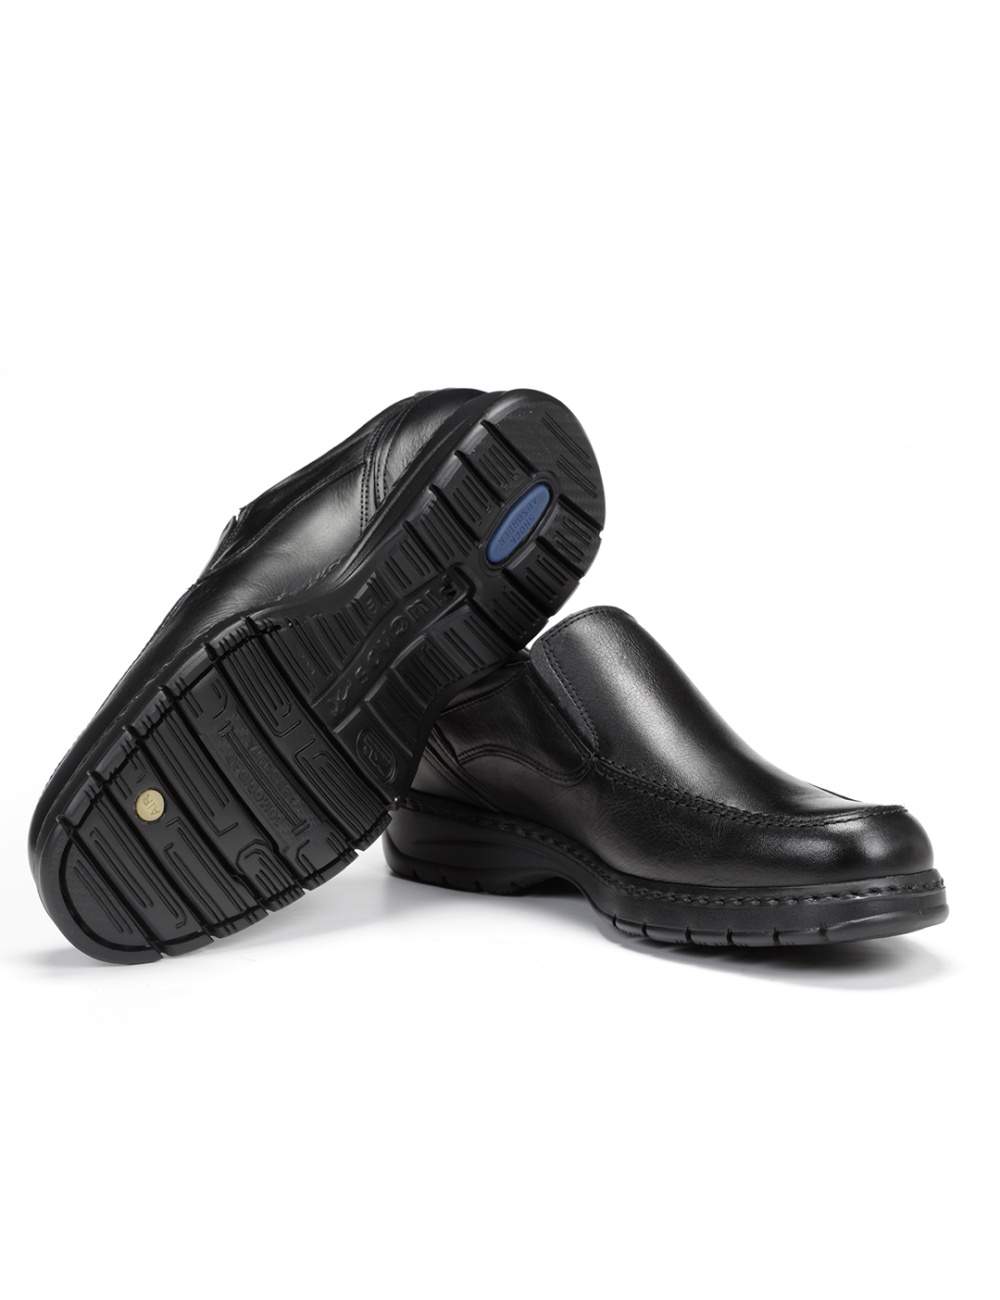 Fluchos - Zapato casual de hombre 9144